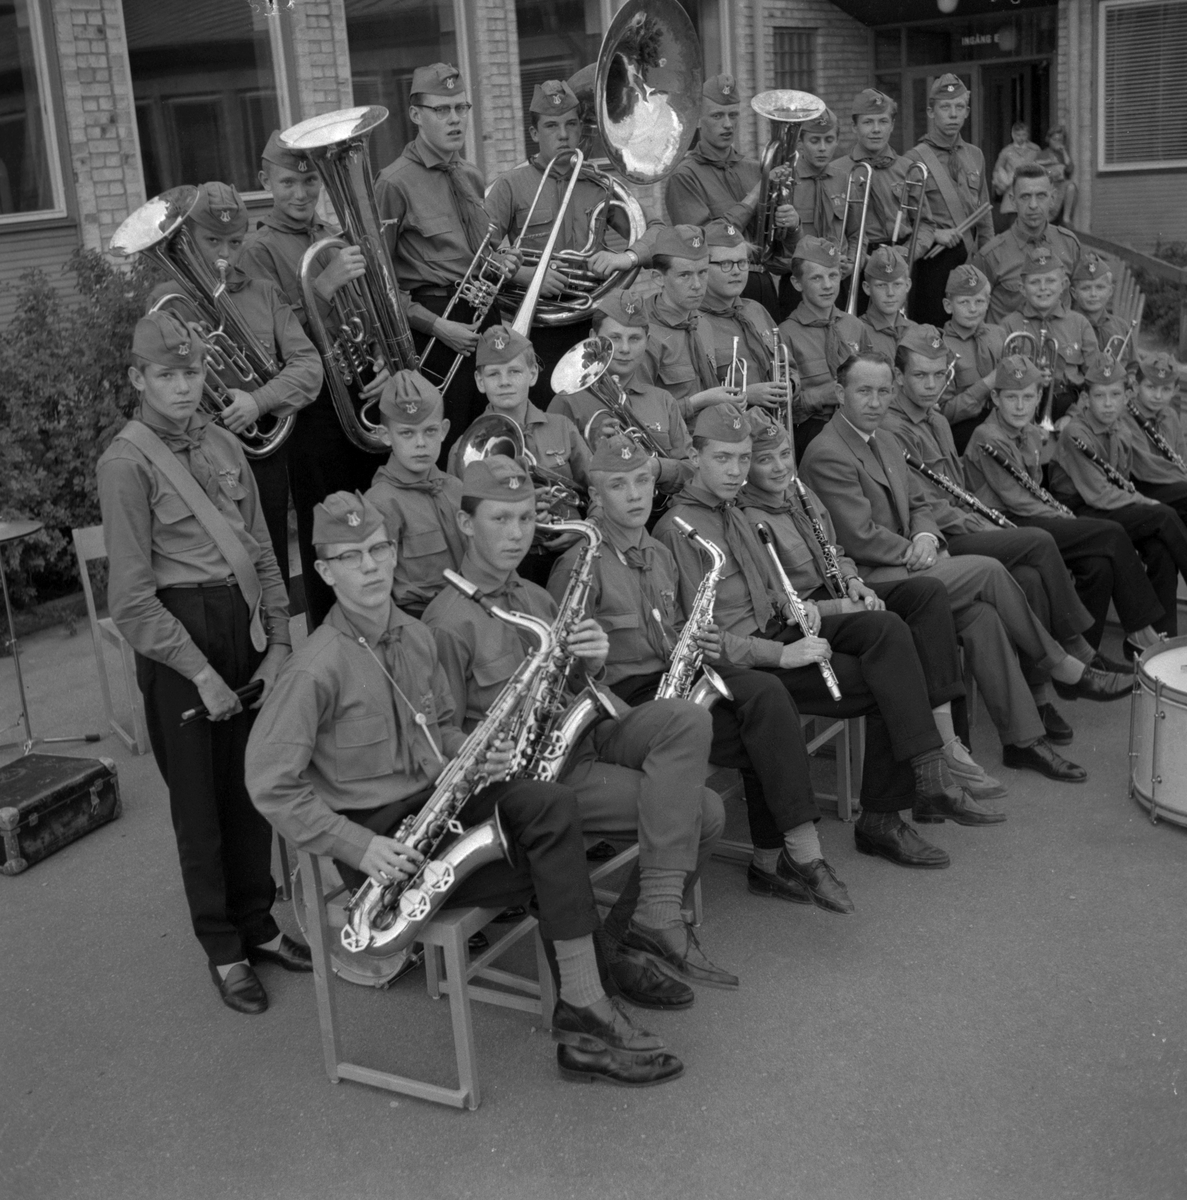 Unga Örnars musikkår. 
2 juni 1959.